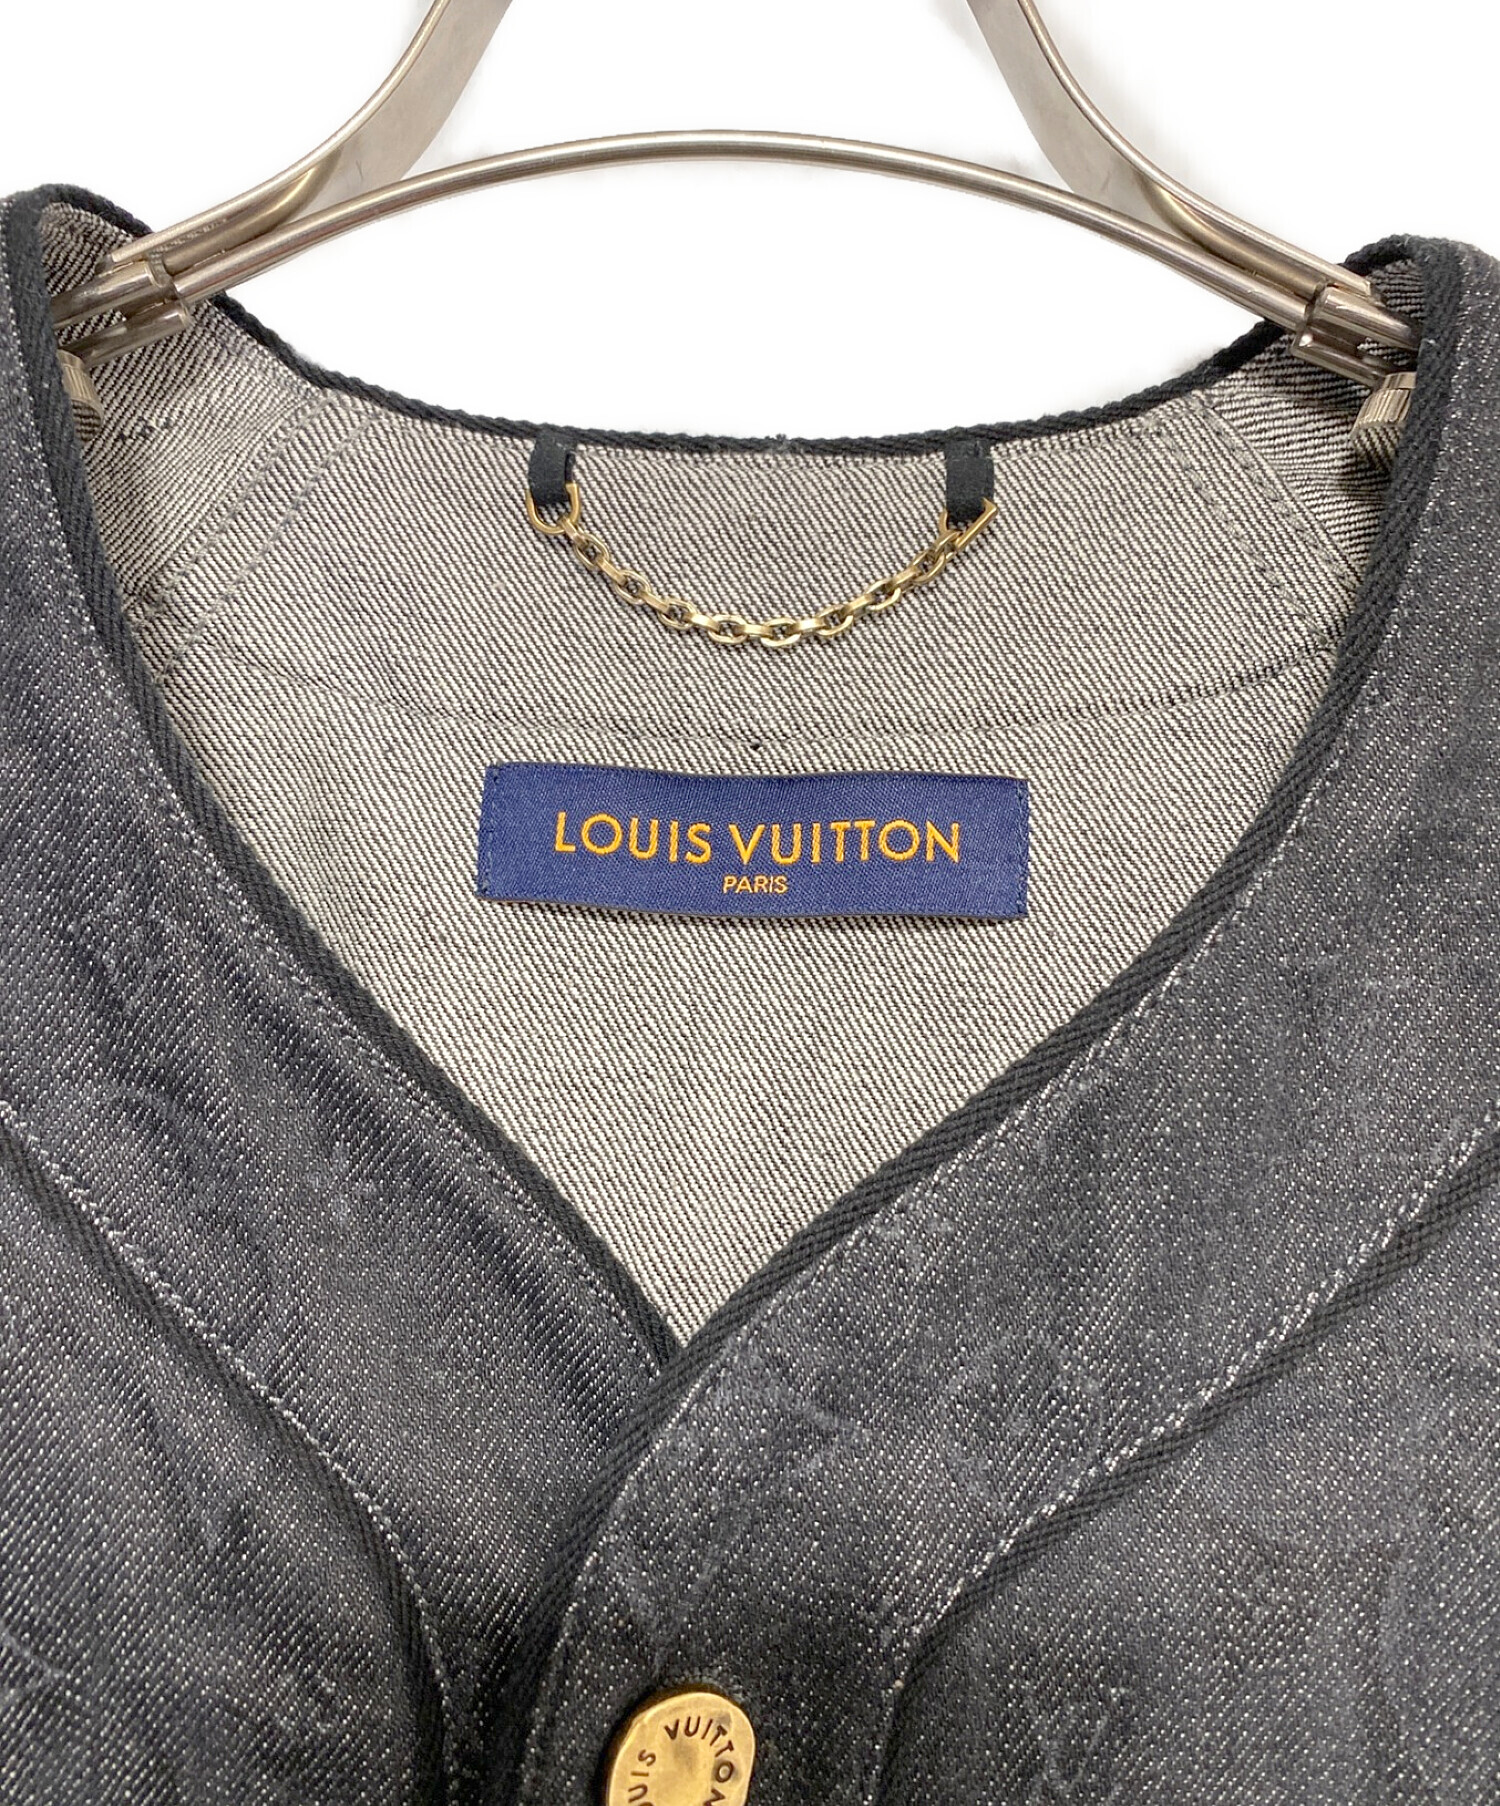 LOUIS VUITTON (ルイ ヴィトン) エンボスモノグラムベースボールシャツ インディゴ サイズ:L